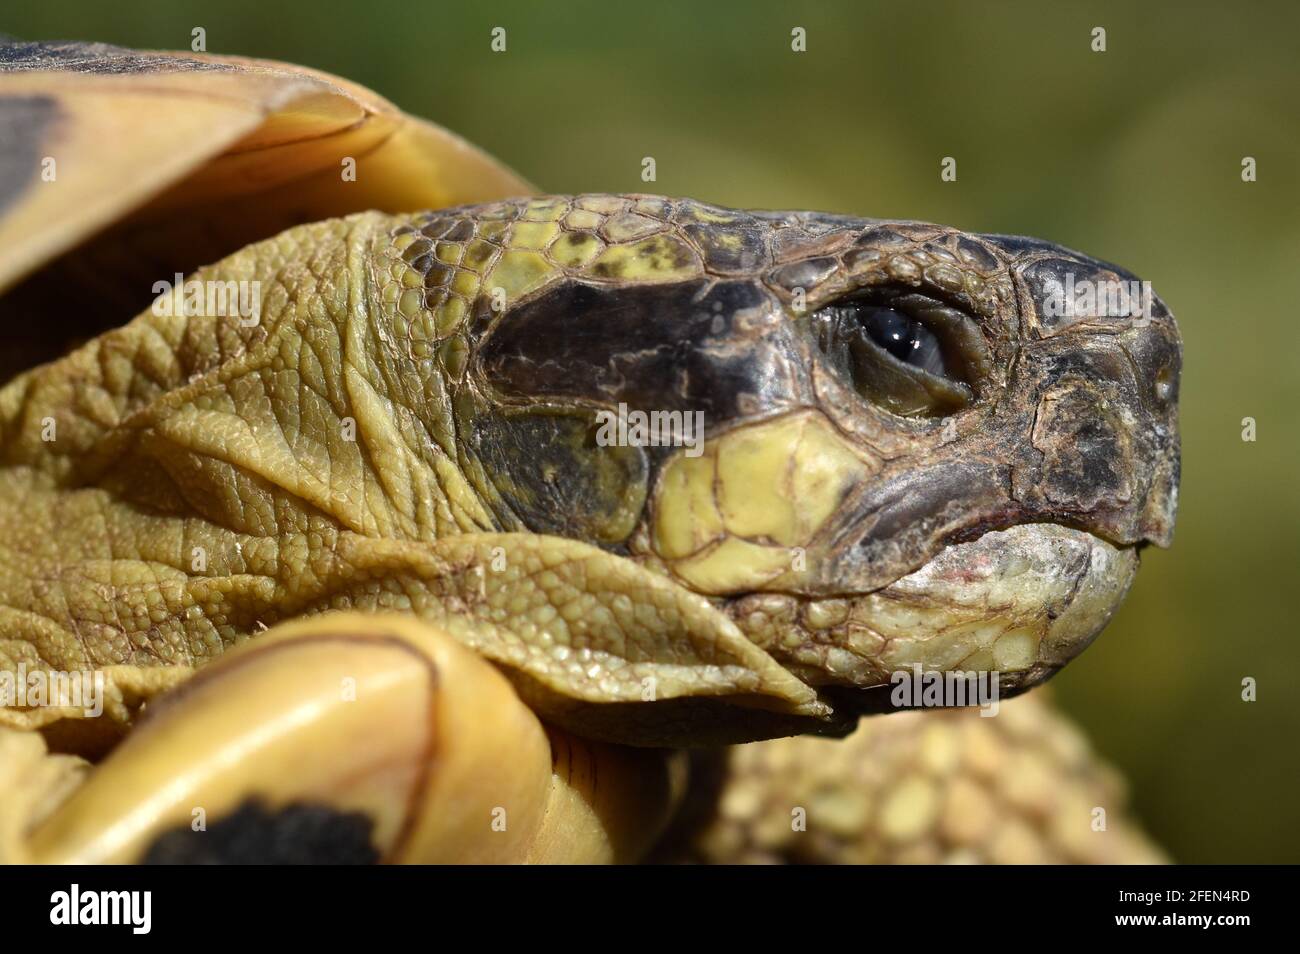 Francia, sud-est, tartaruga terrestre della regione mediterranea, questo rettile è ben adattato al clima della regione ths. Foto Stock